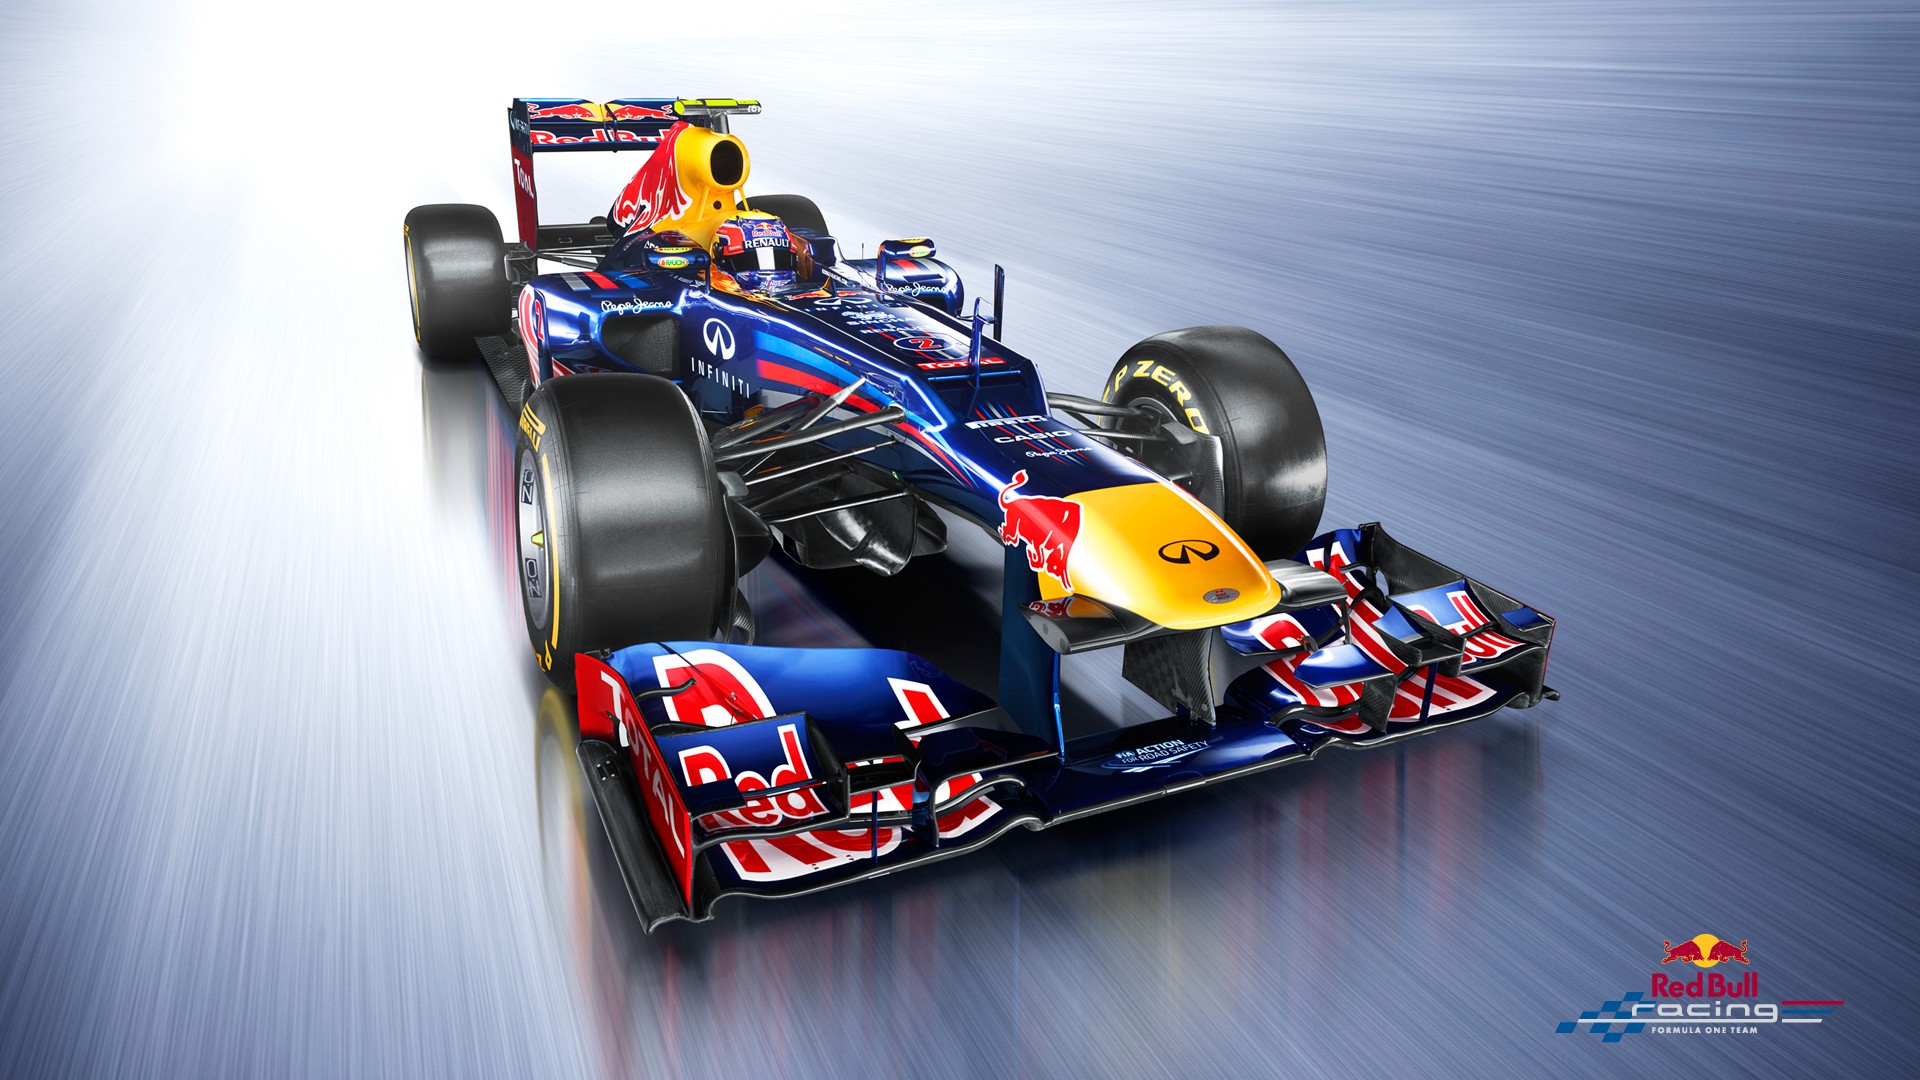 Red Bull Racing Wallpaper - WallpaperSafari